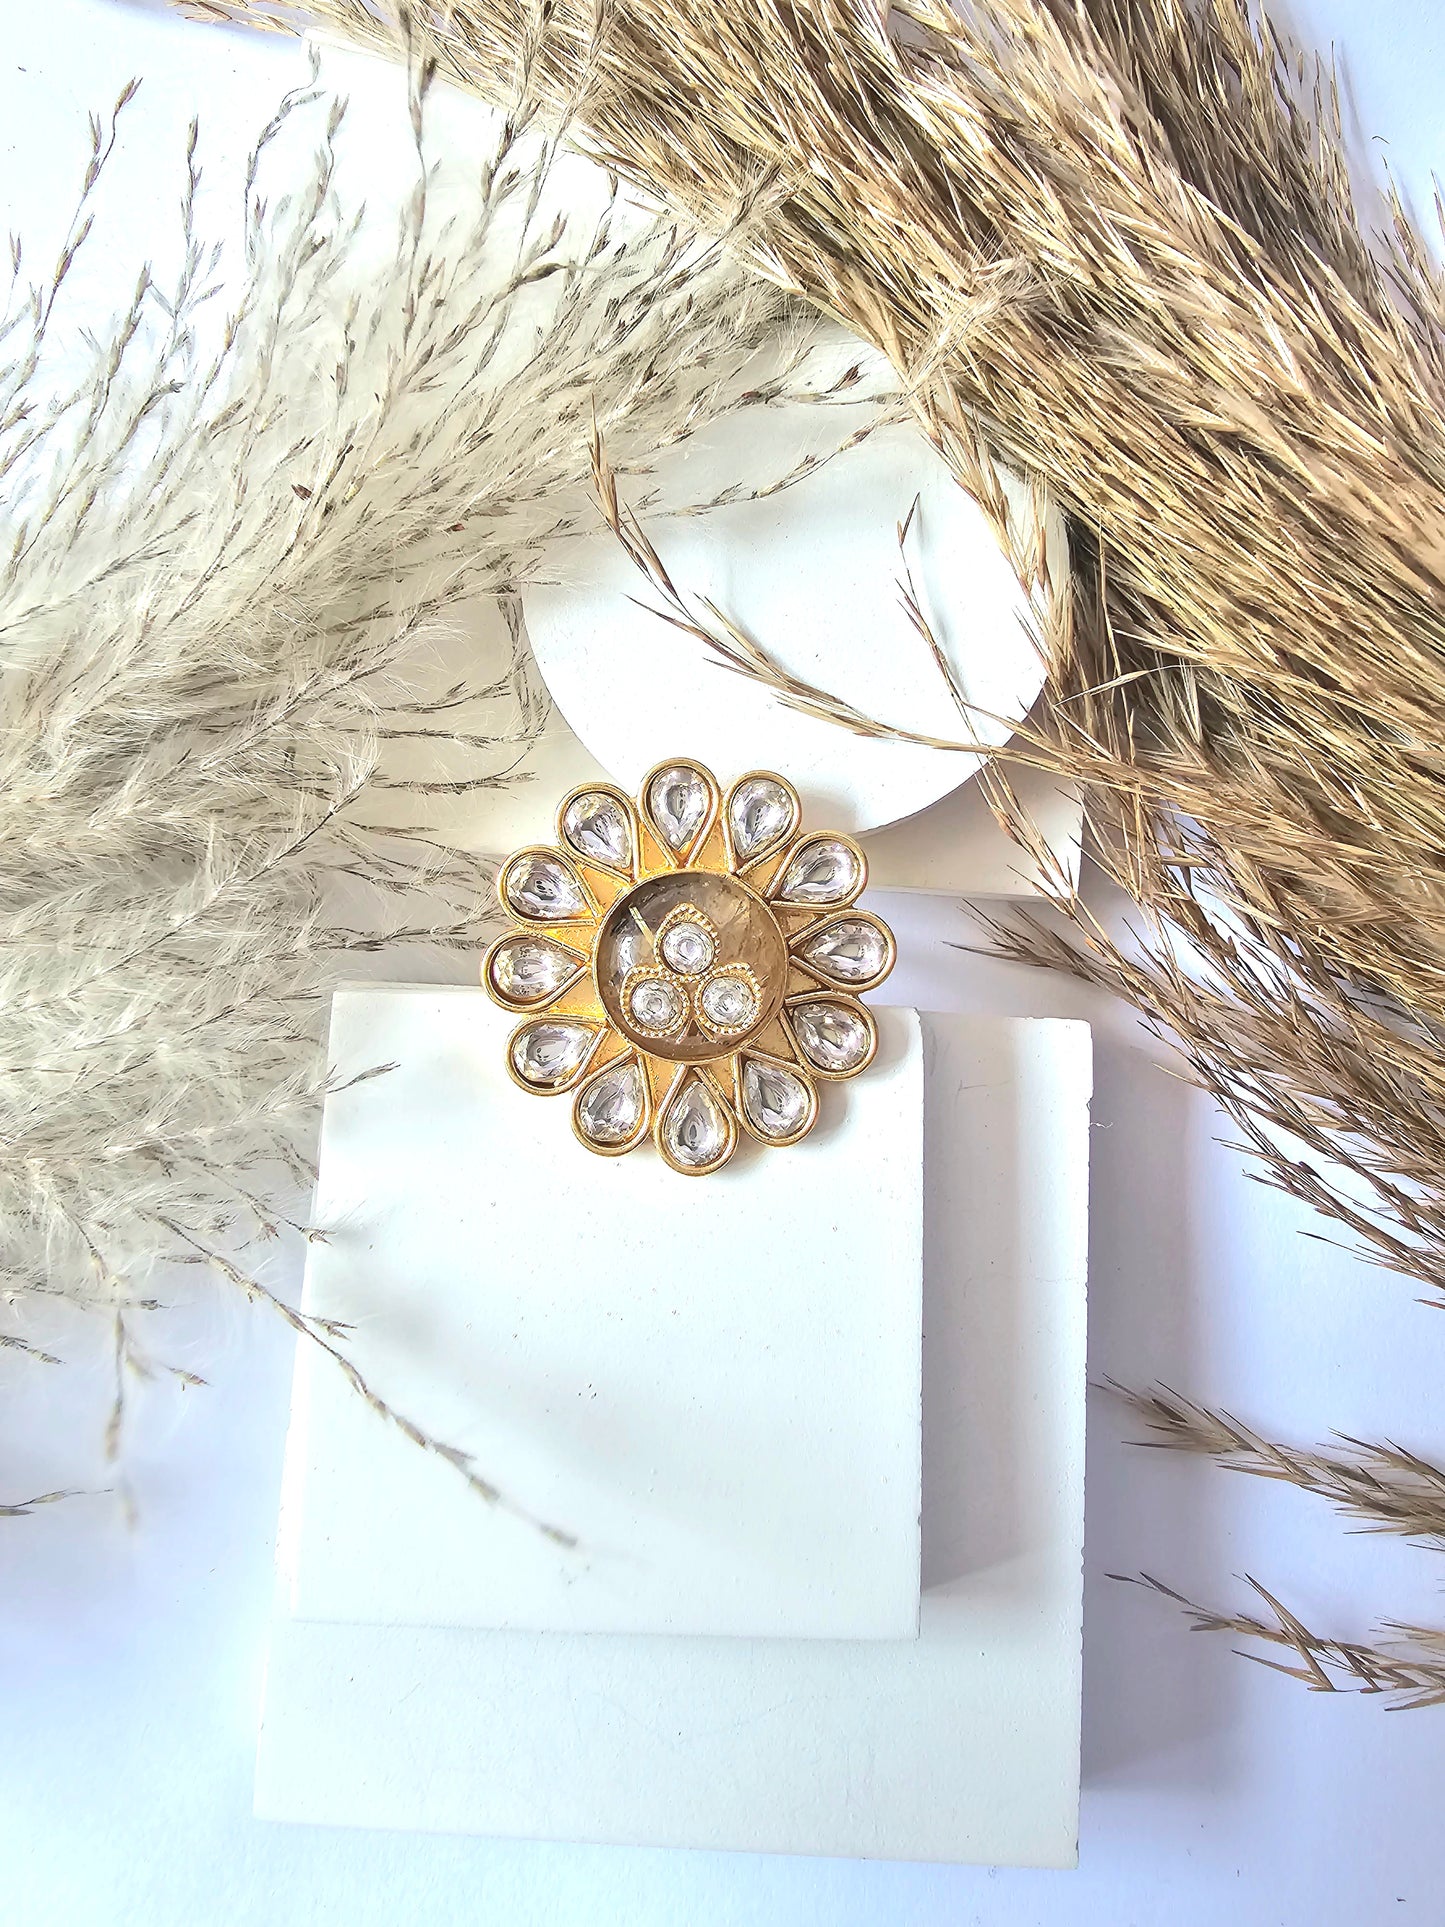 Golden Flower Design Small Oval Shape Kundan Ring